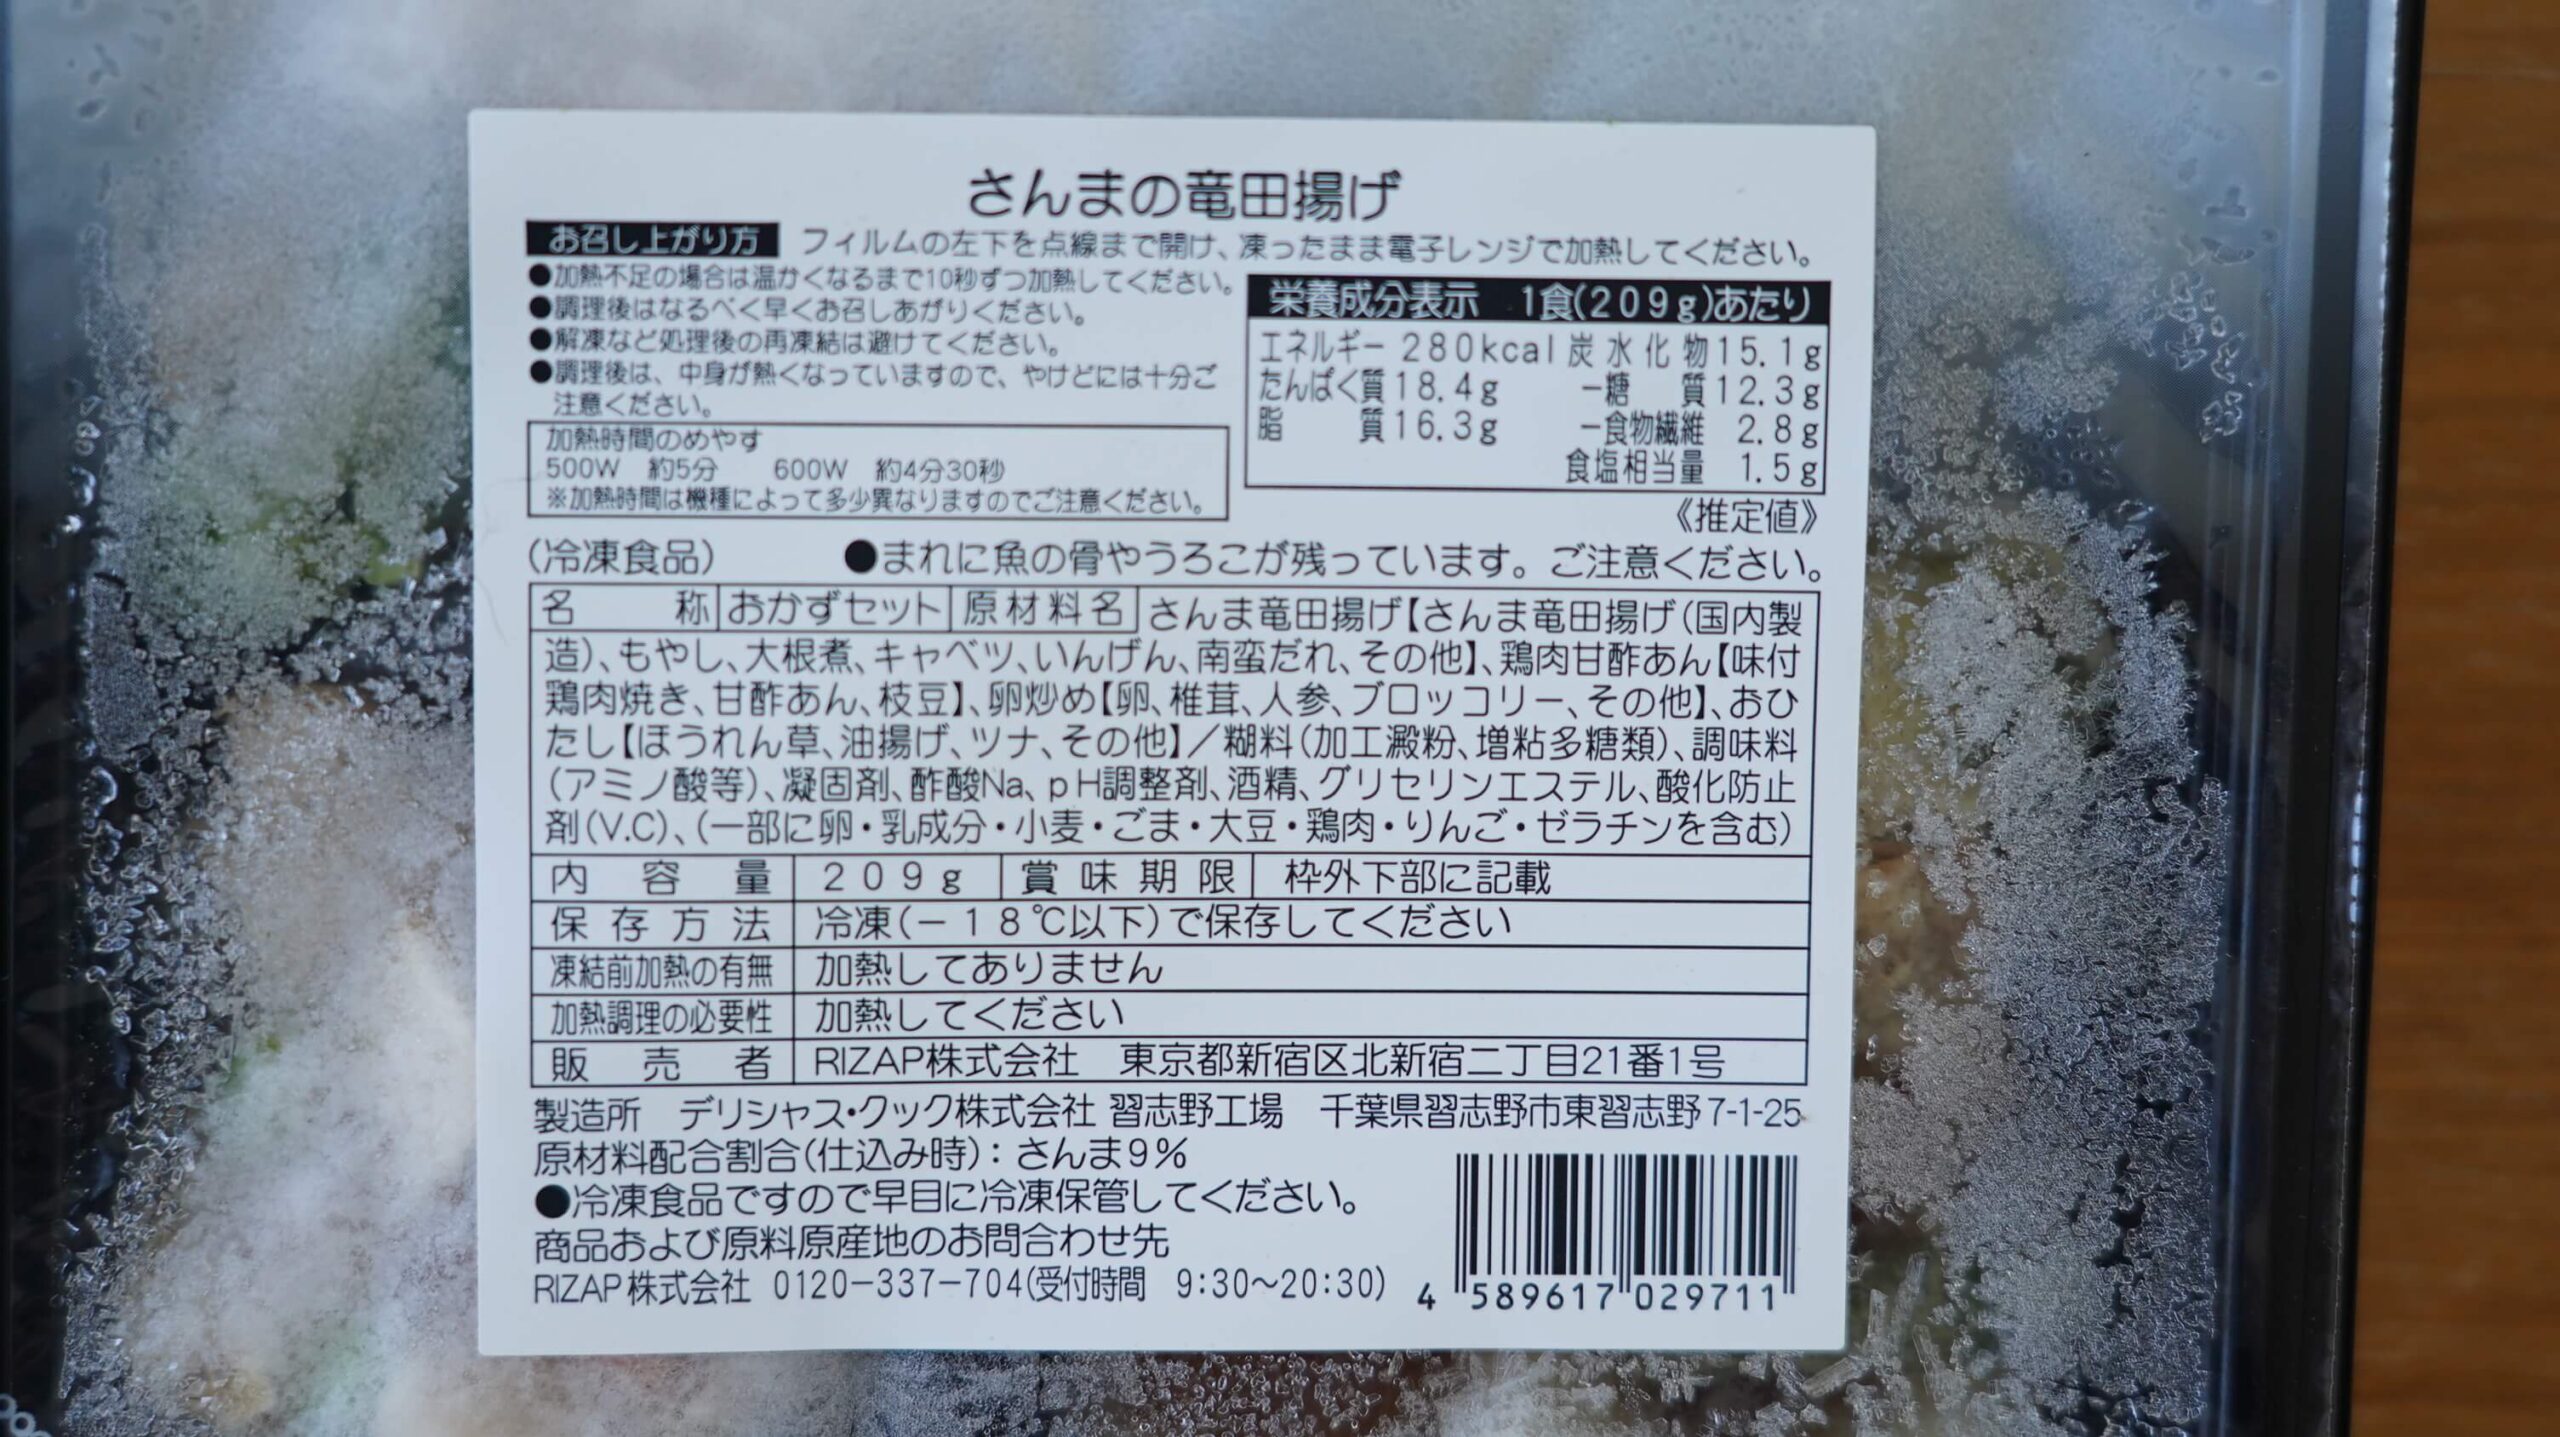 ライザップのサポートミール「さんまの竜田揚げ」の商品情報の写真